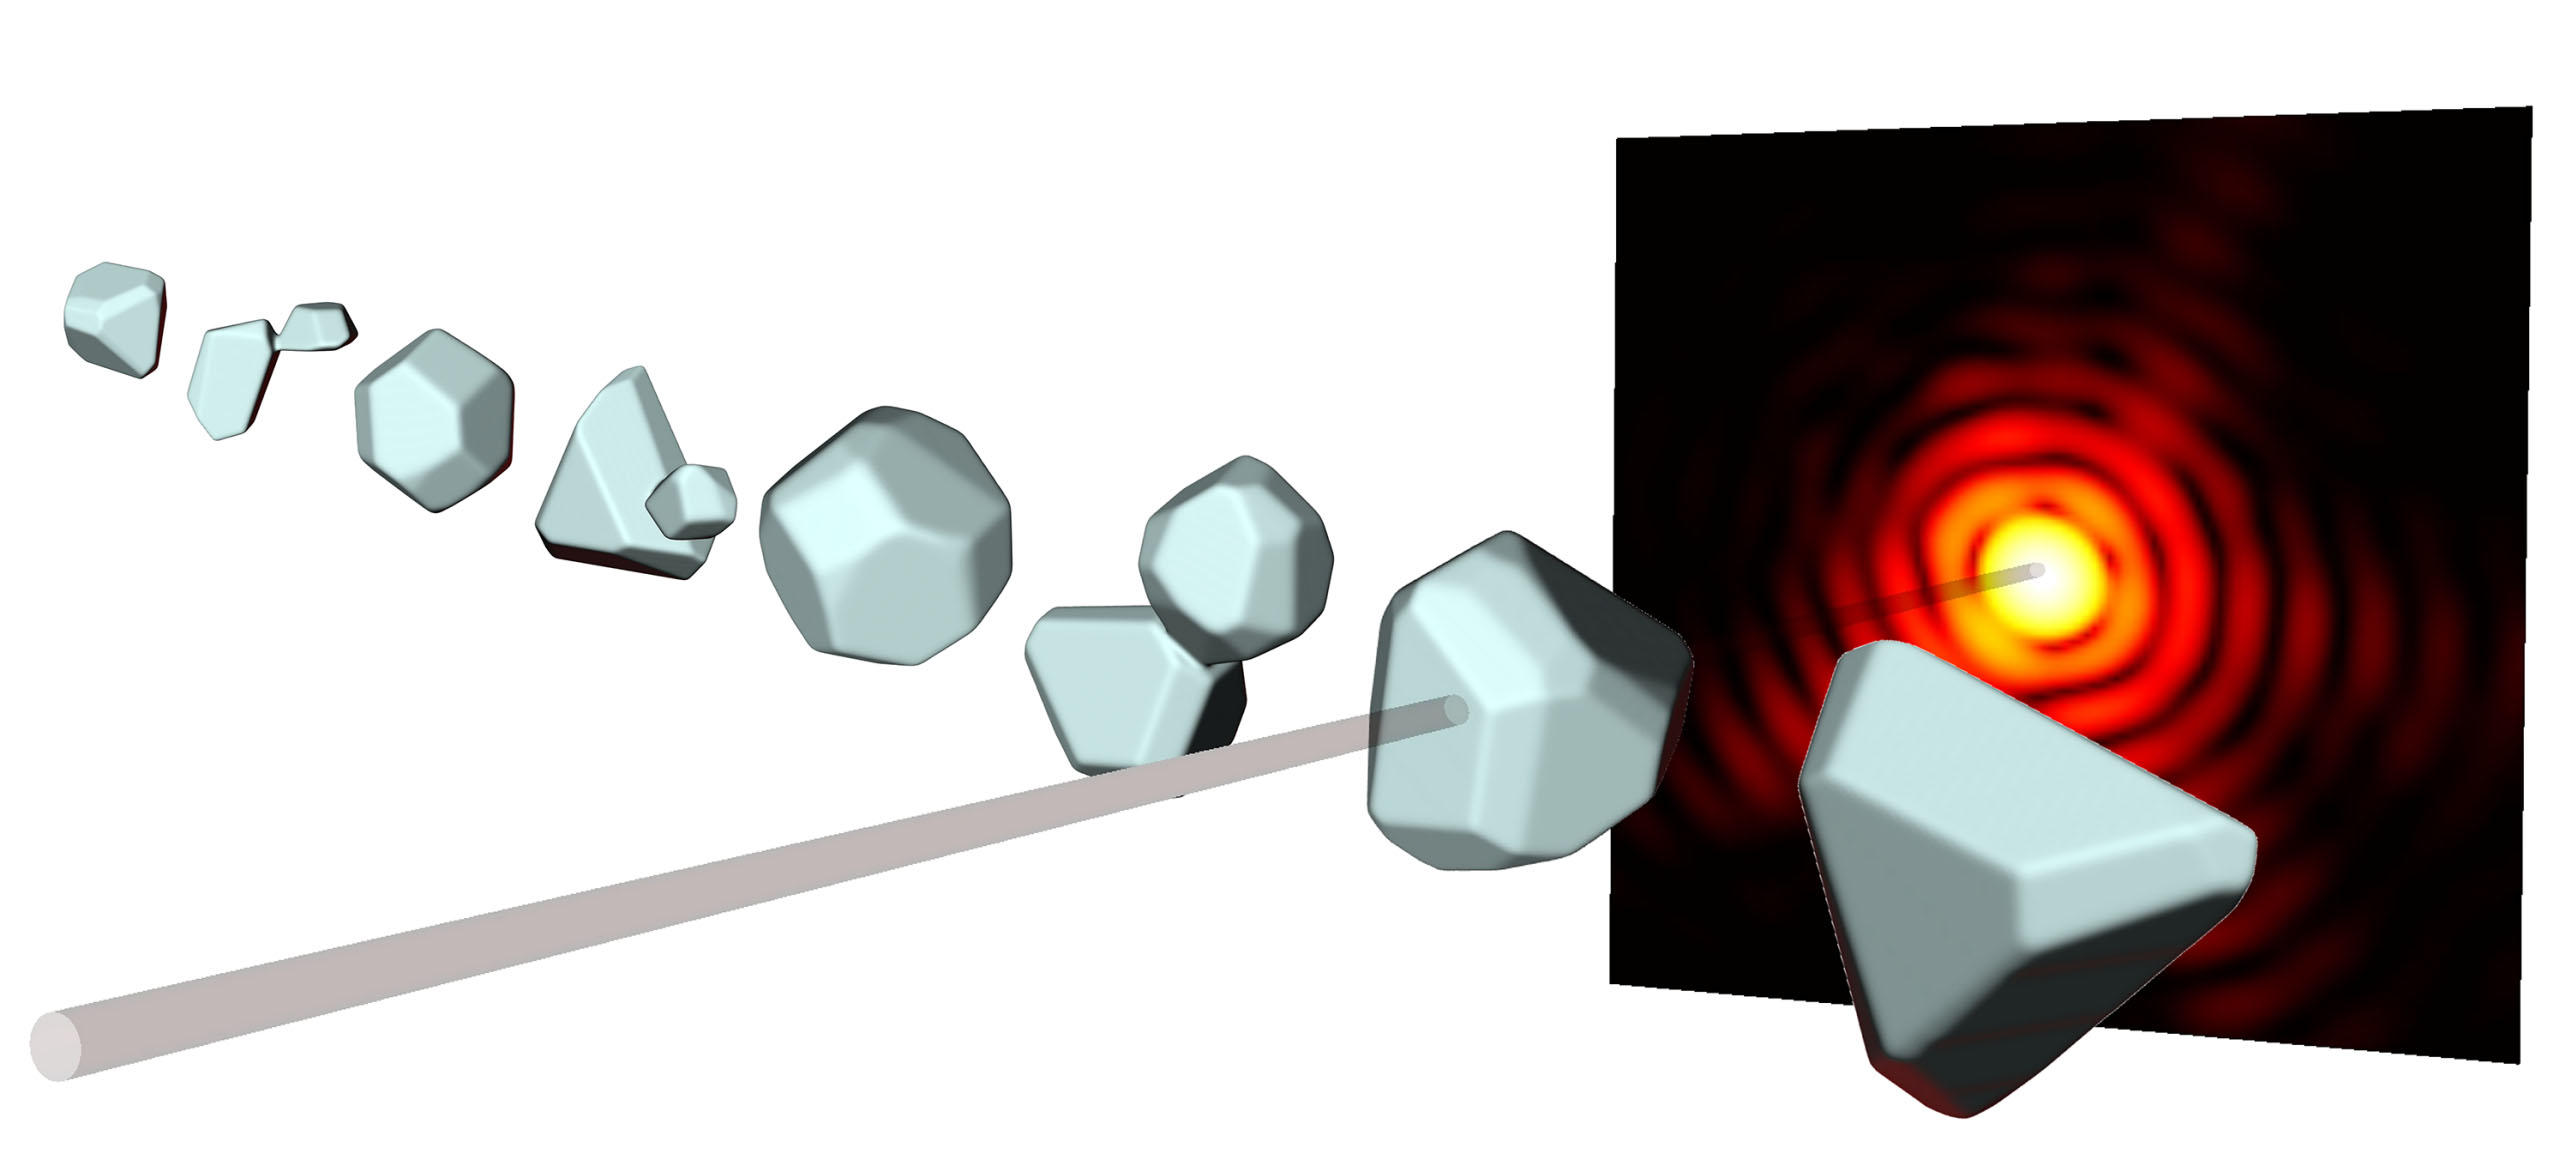 Aus den Beugungsmustern (rot) von Röntgenpulsen (grau), mit denen Nanopartikel beschossen werden, können Forscher dreidimensionale Bilder berechnen